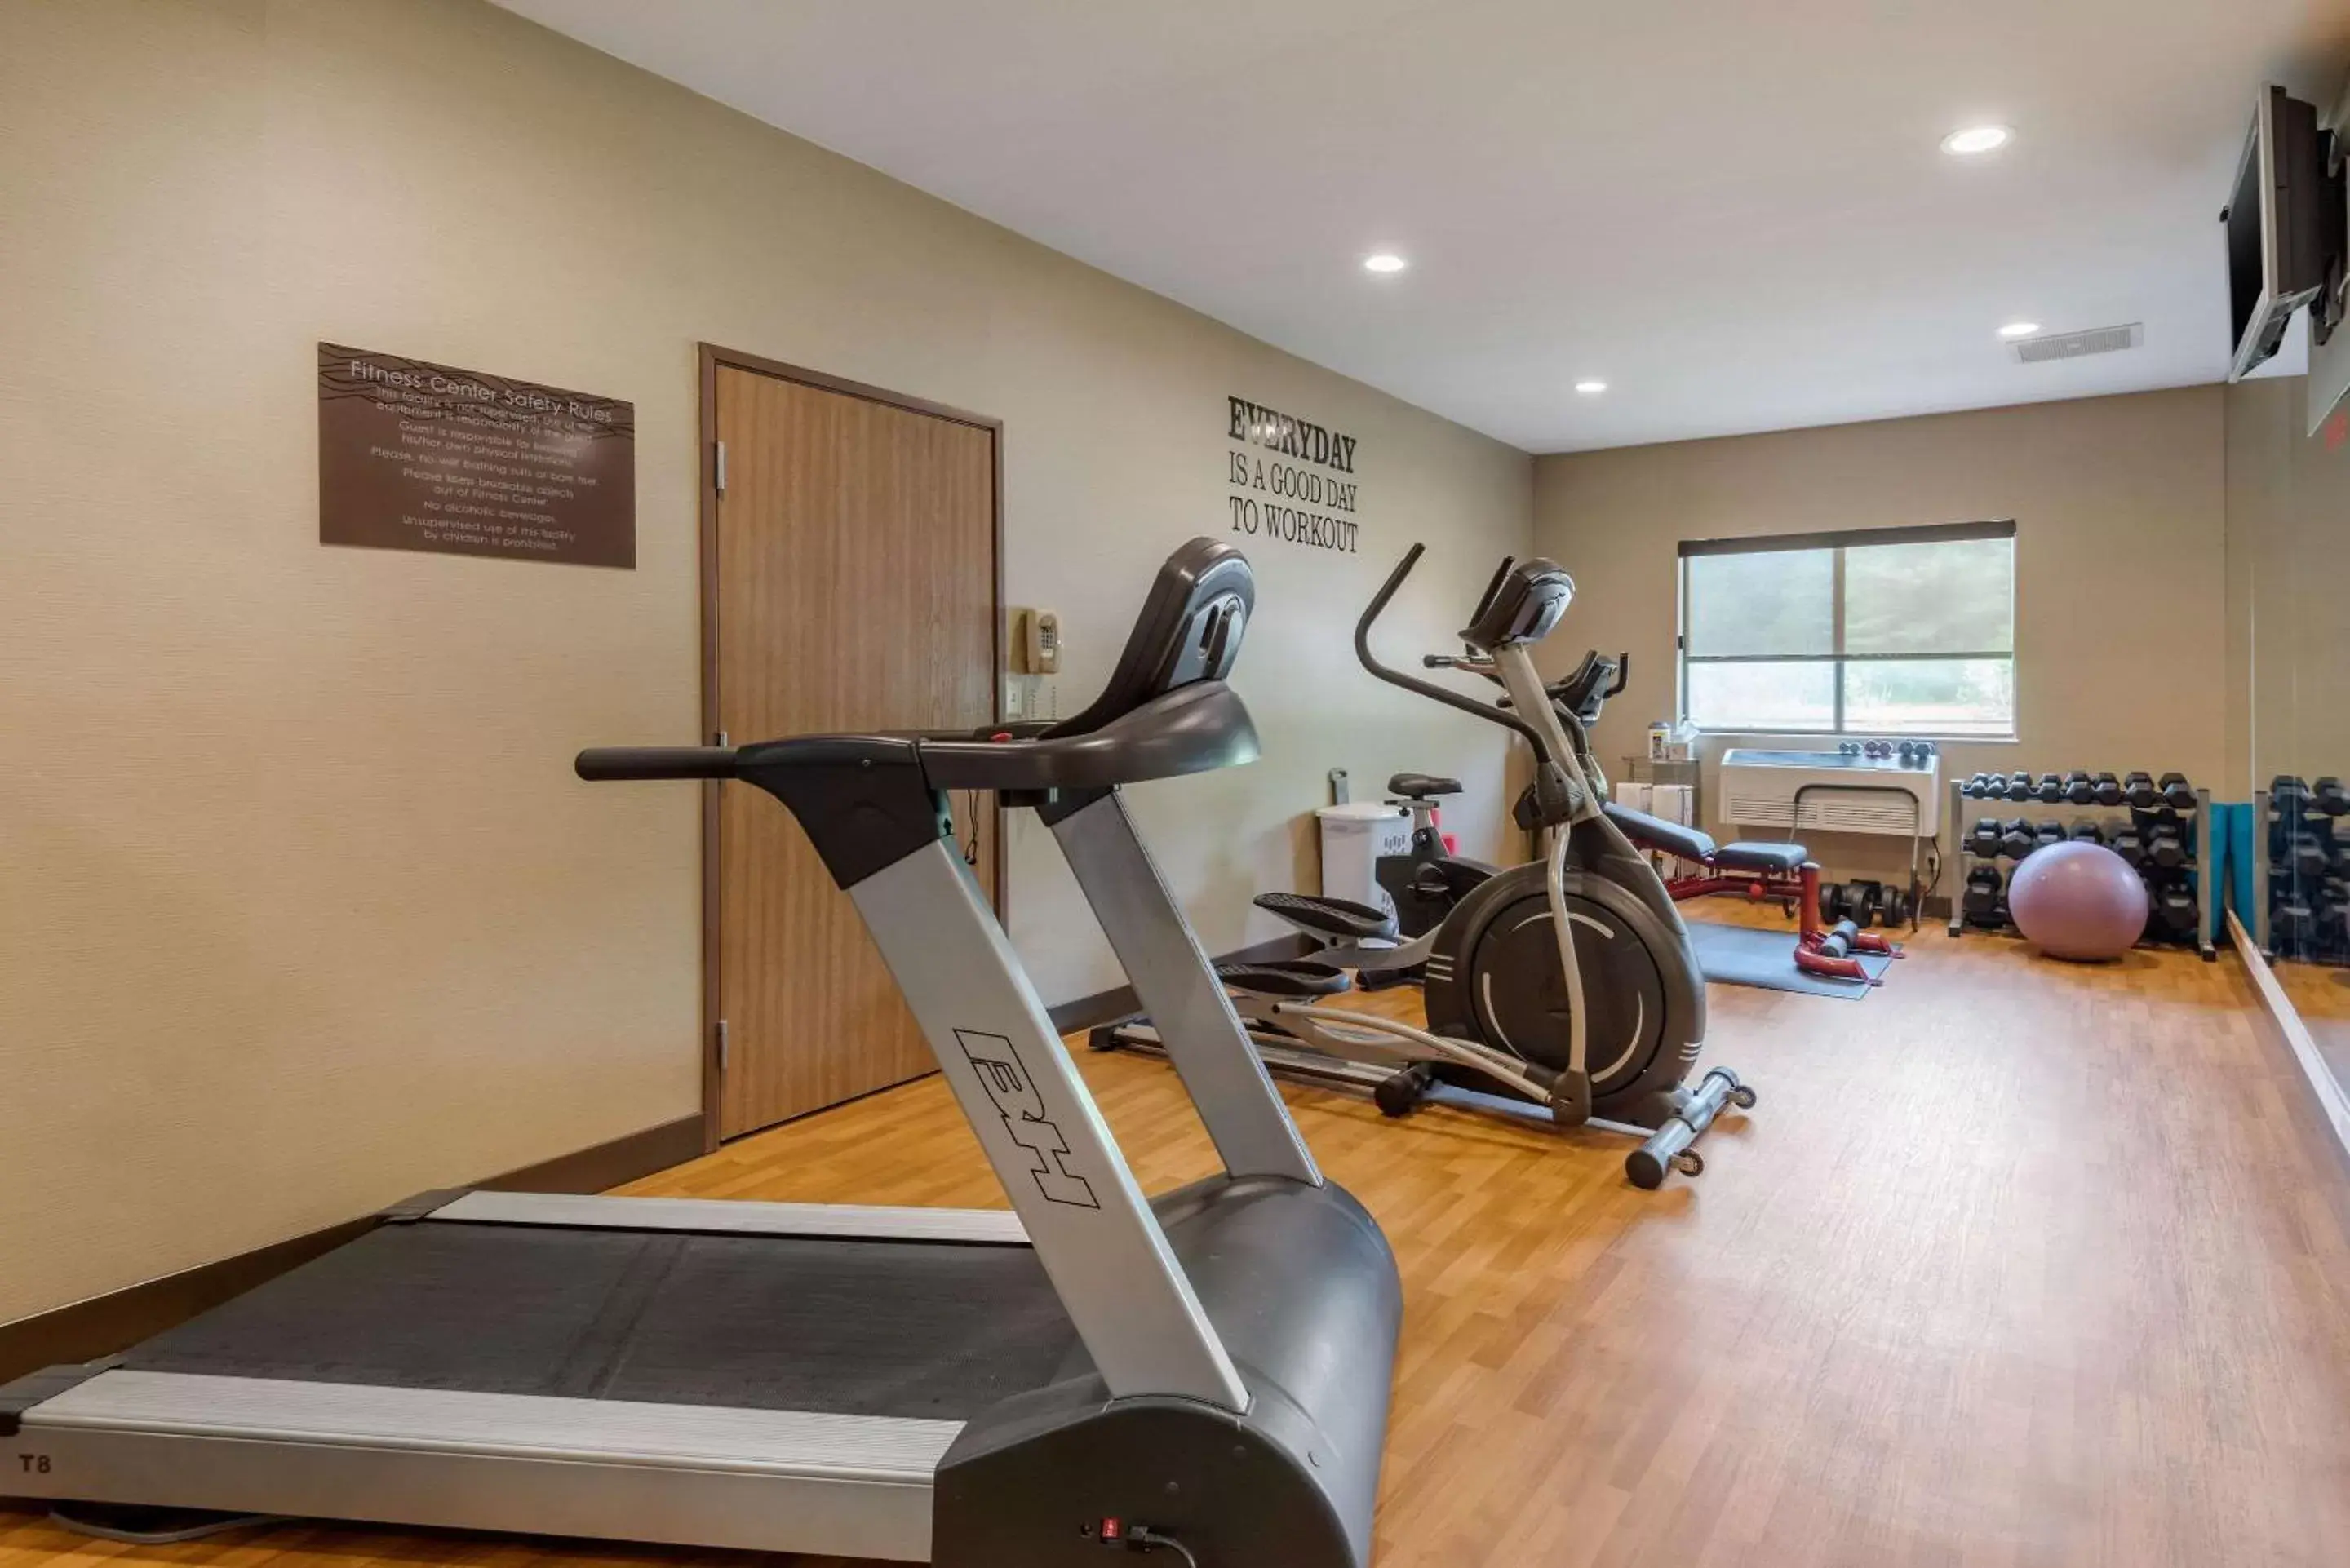 Fitness centre/facilities, Fitness Center/Facilities in Comfort Inn Ellsworth